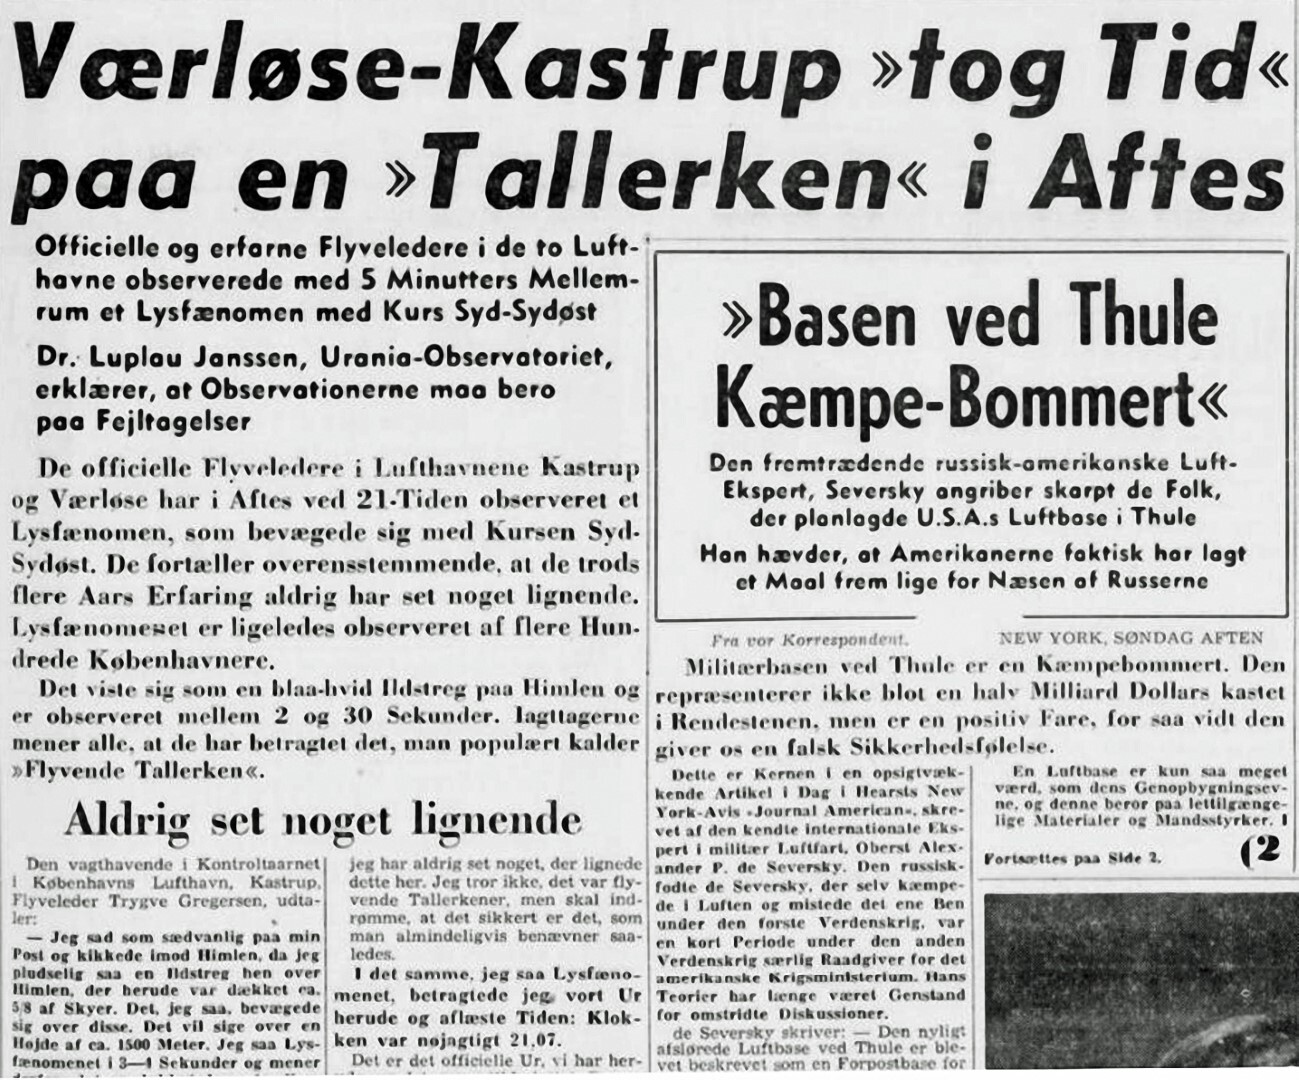 05-berlingske-tidende-1936-2011---1952-10-13-res-300-large-1